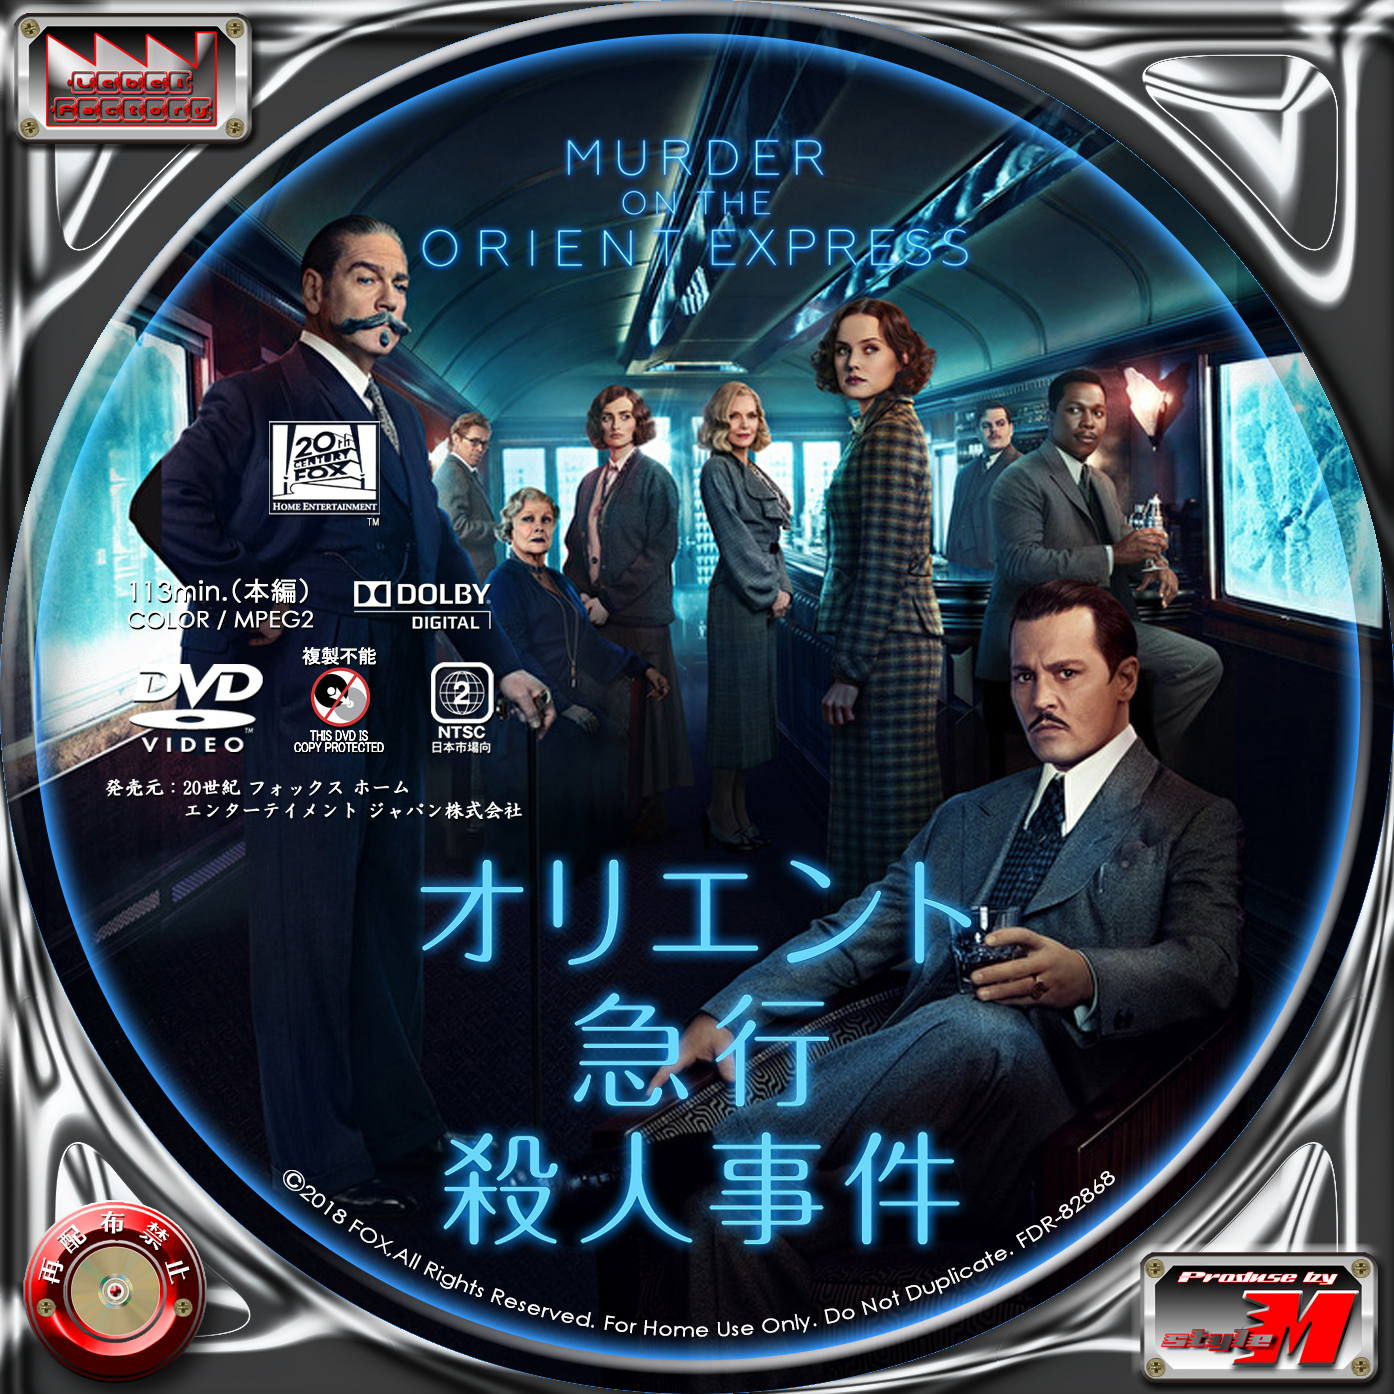 オリエント急行殺人事件 Murder On The Orient Express Label Factory M Style 自作 Dvd レーベル ラベル